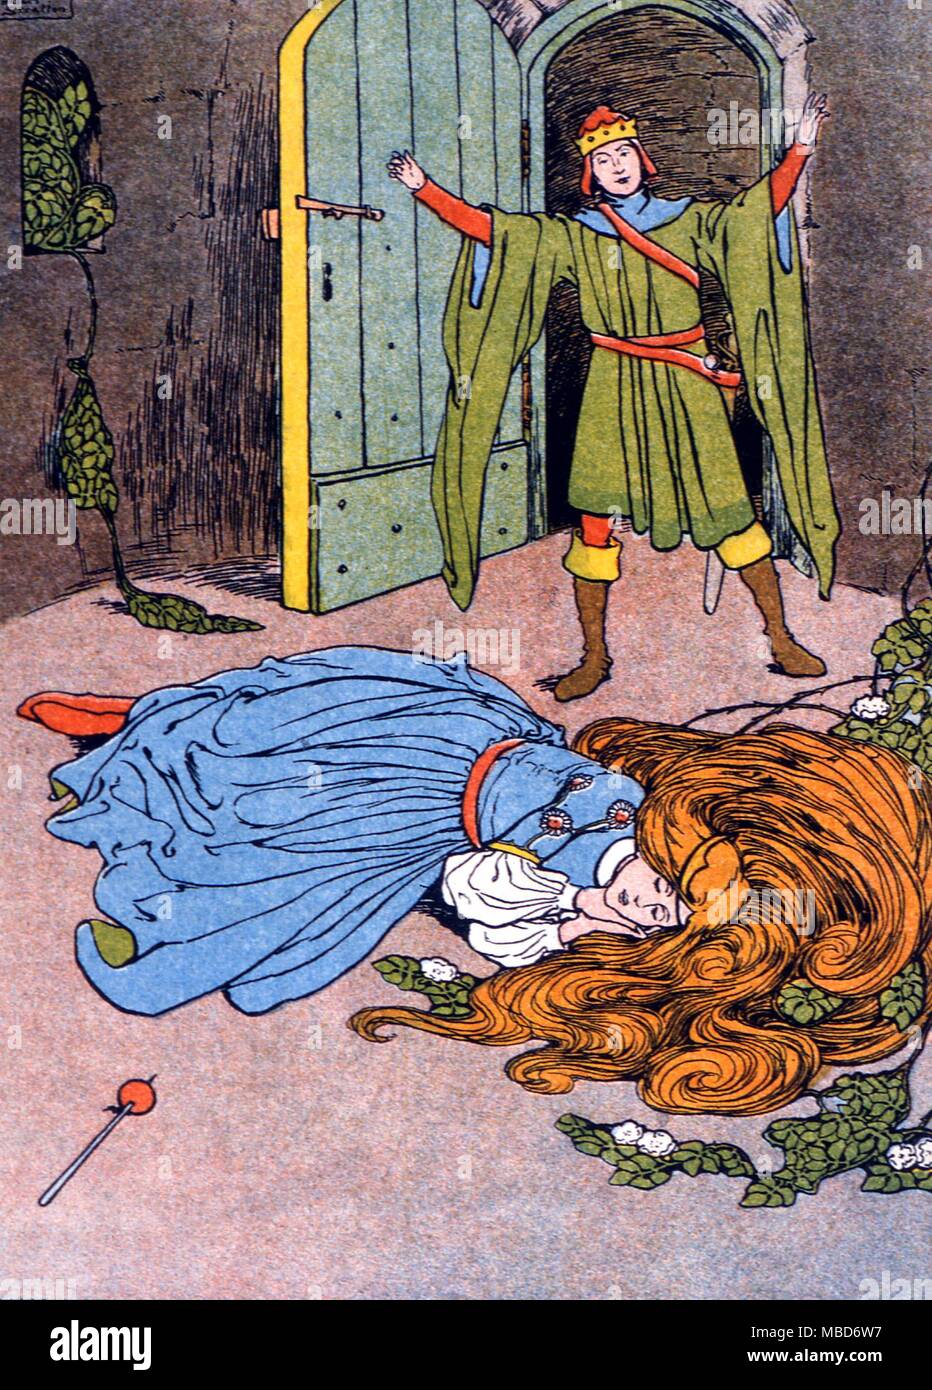 Sleeping Beauty - Le Prince découvre le Rosebud de couchage. De Cherryblossom et autres histoires de Grimm 1909 illustré par Helen Stratton Banque D'Images